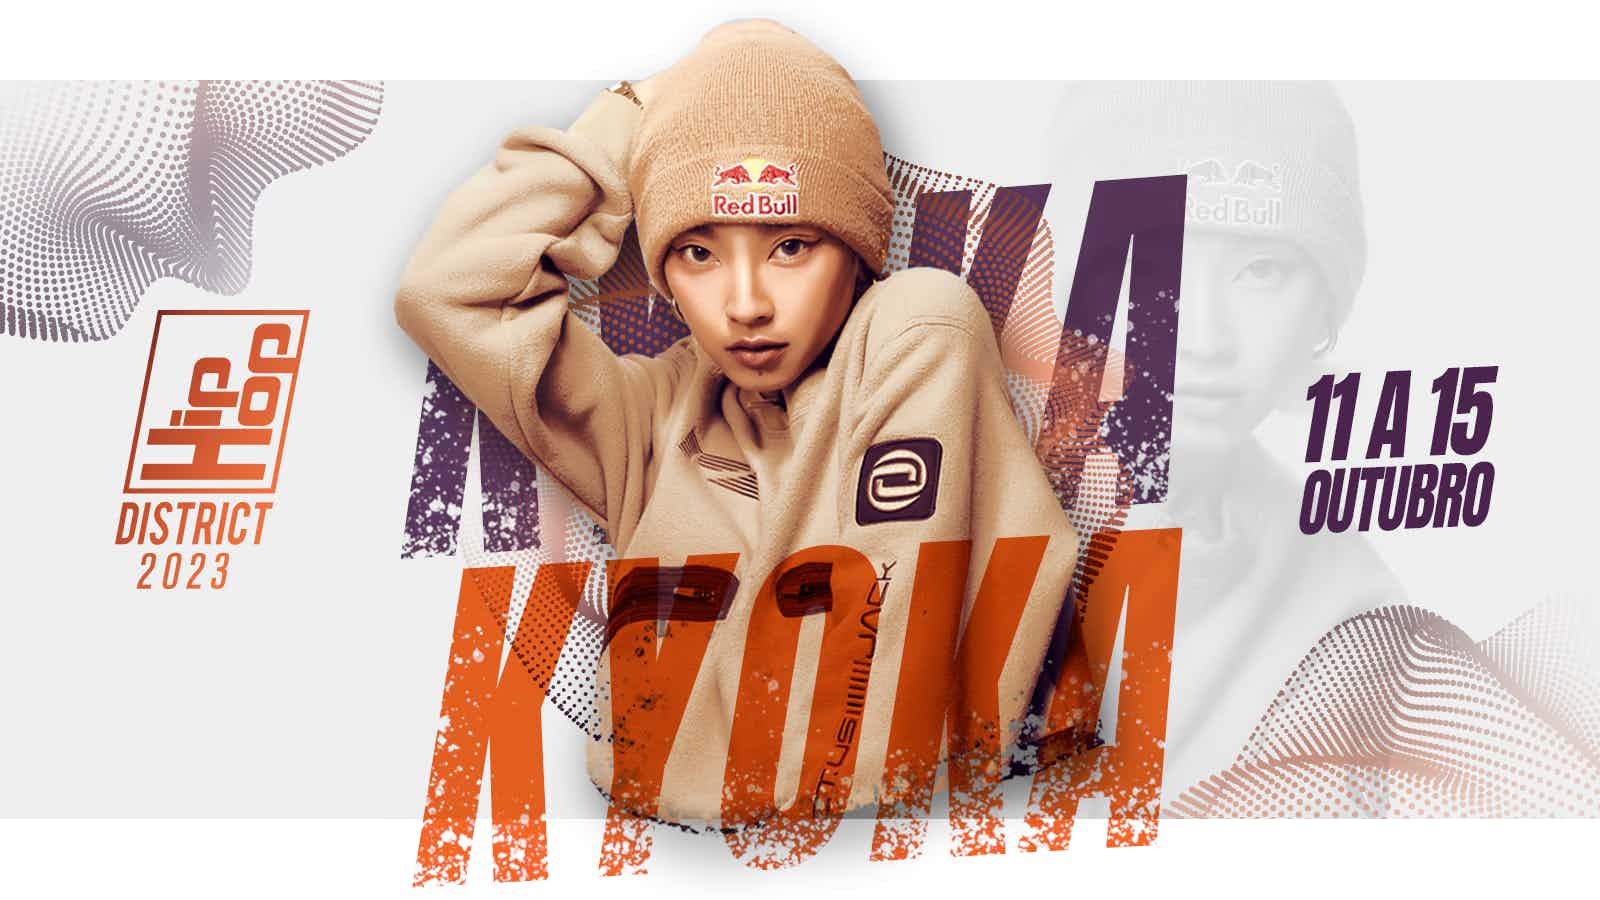 Esta imagem apresenta a artista Kyoka, juntamente com o logo do Hip Hop District e a data do evento.